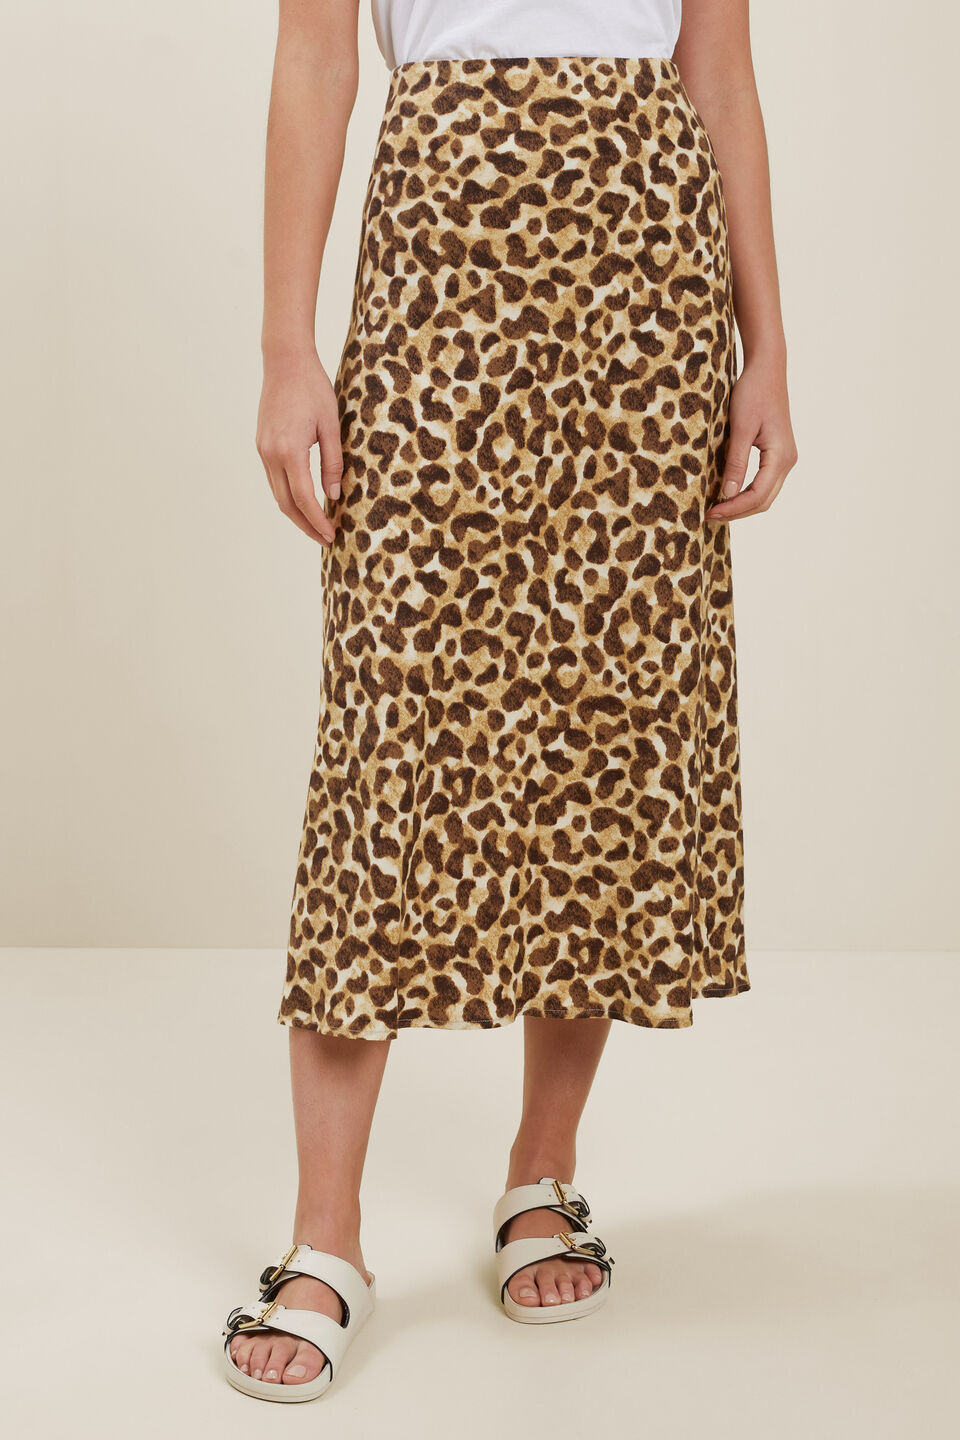 Leopard Slip Skirt  Leopard